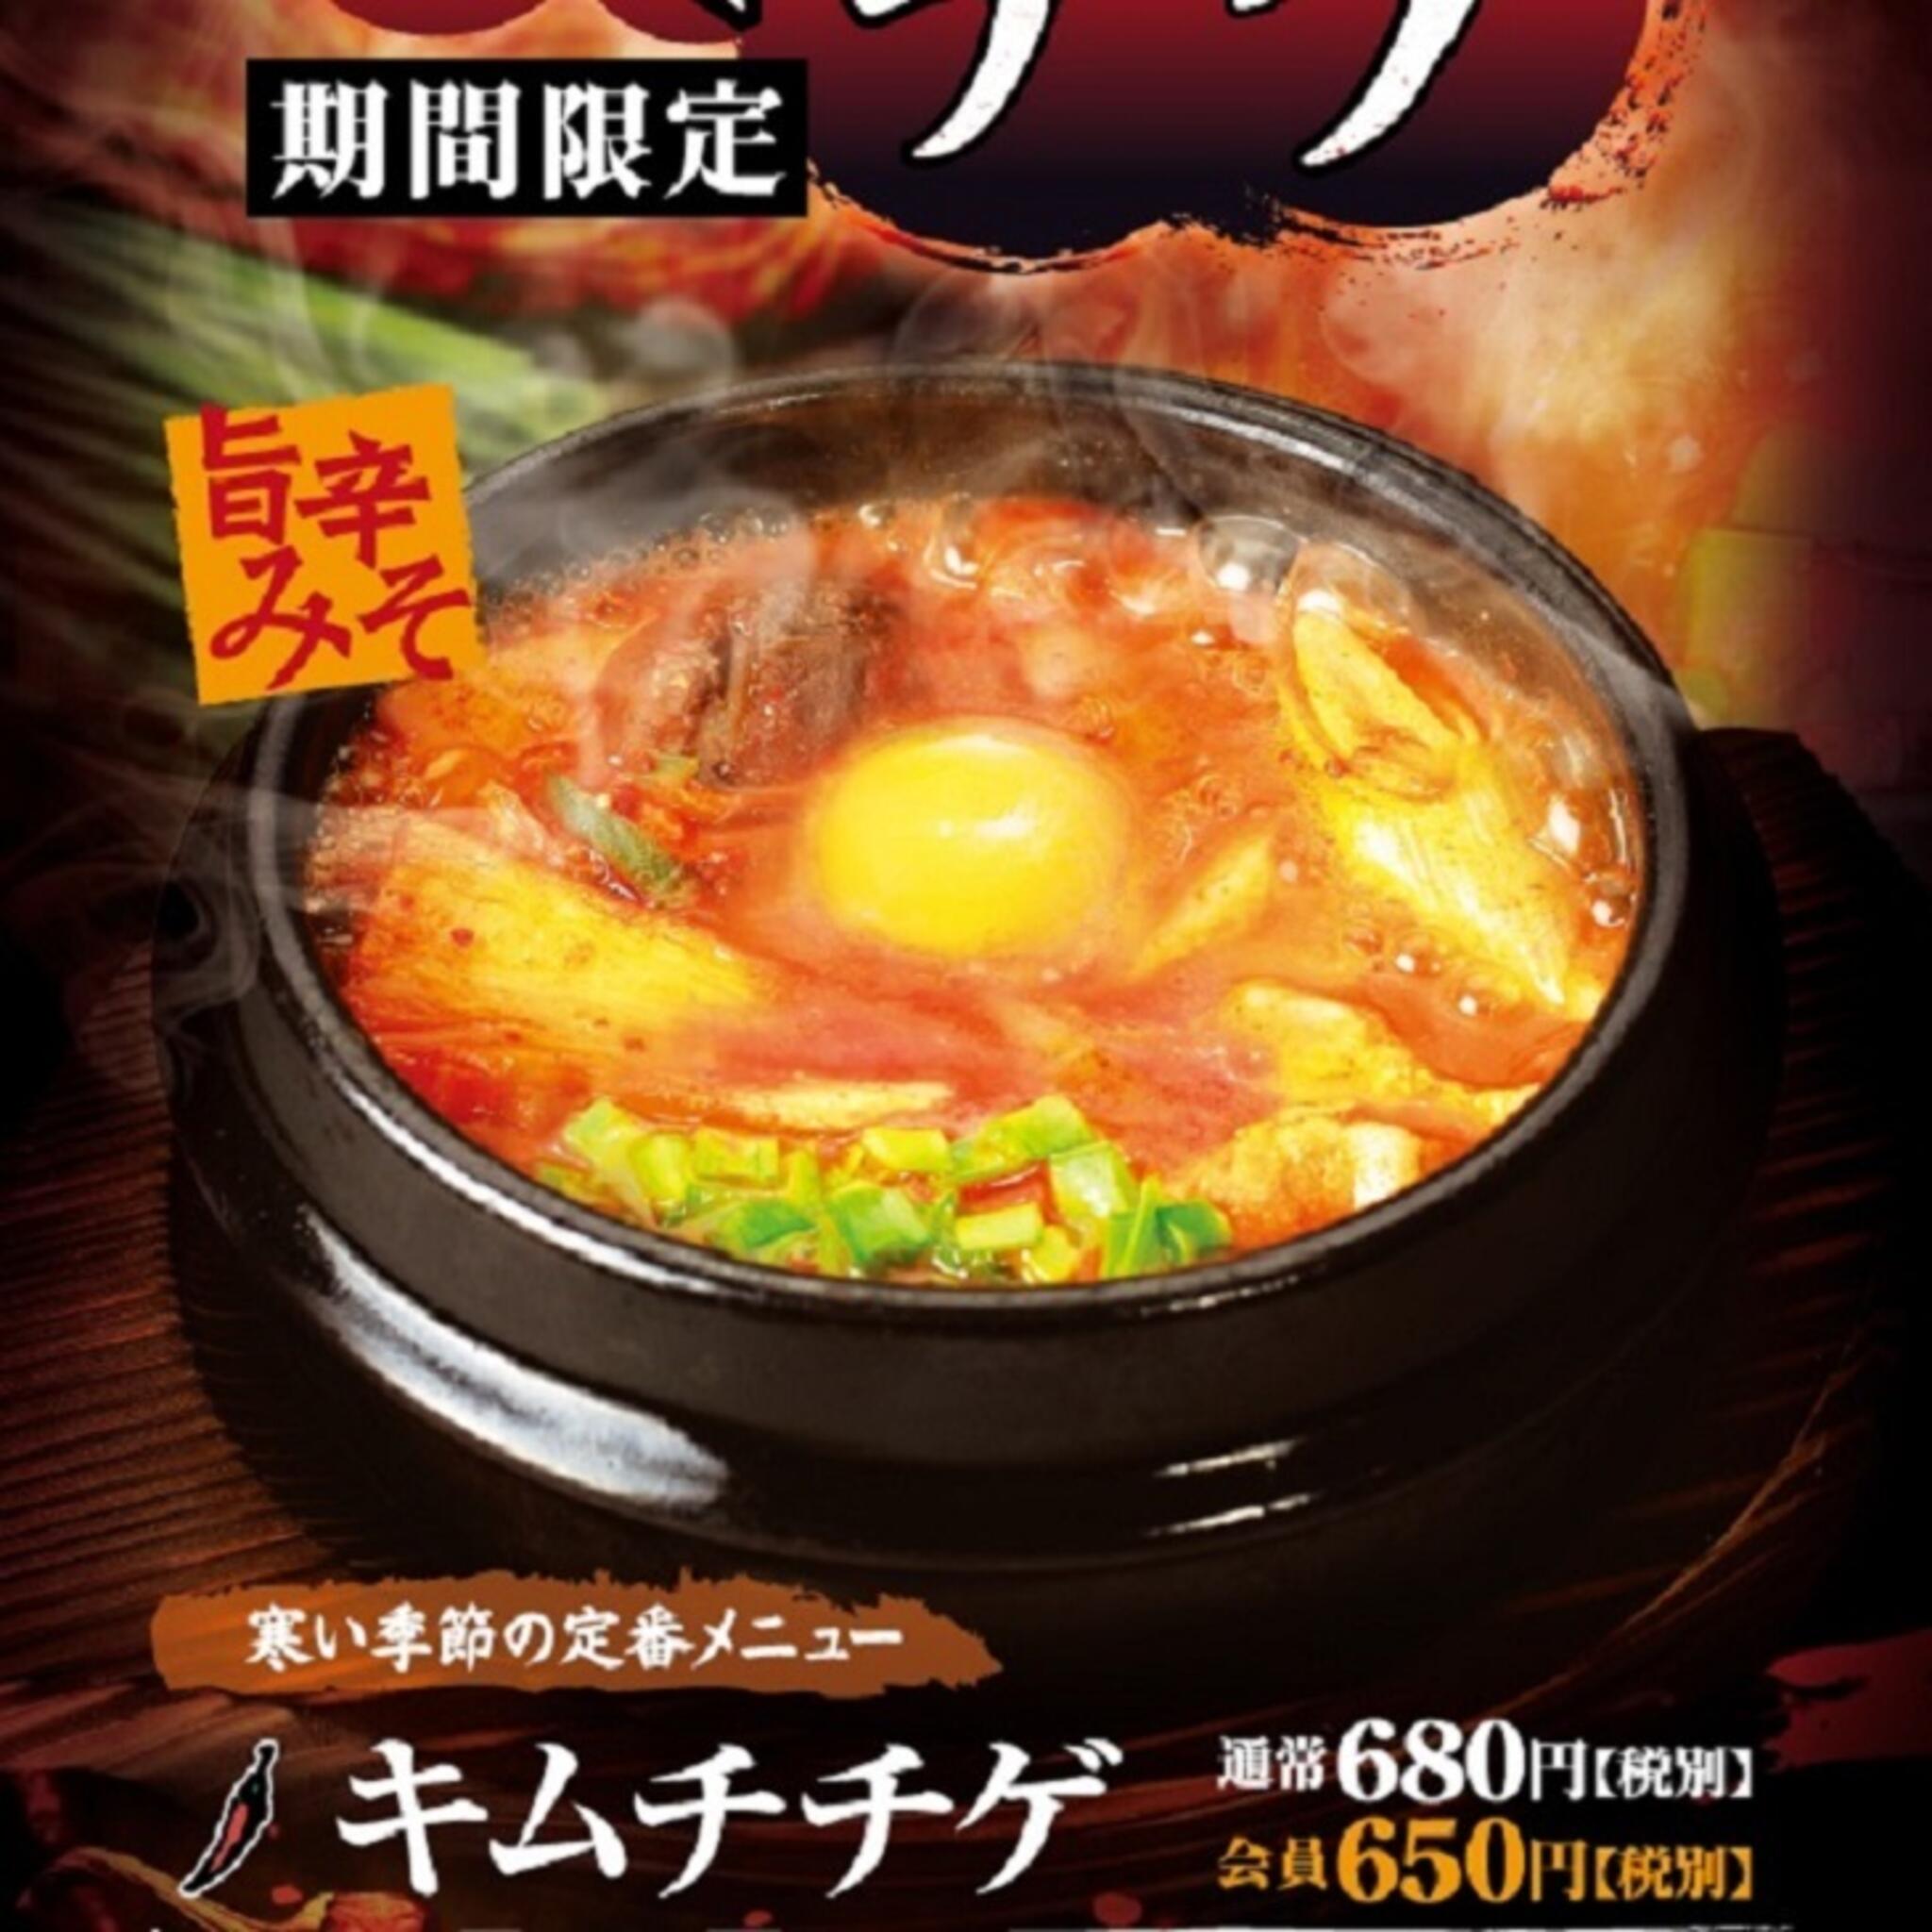 焼肉冷麺やまなか家 上田バイパス店からのお知らせ(🌶🍲寒い季節の定番メニュー🌶🍲【キムチチゲ】 期間限定です❕❕)に関する写真